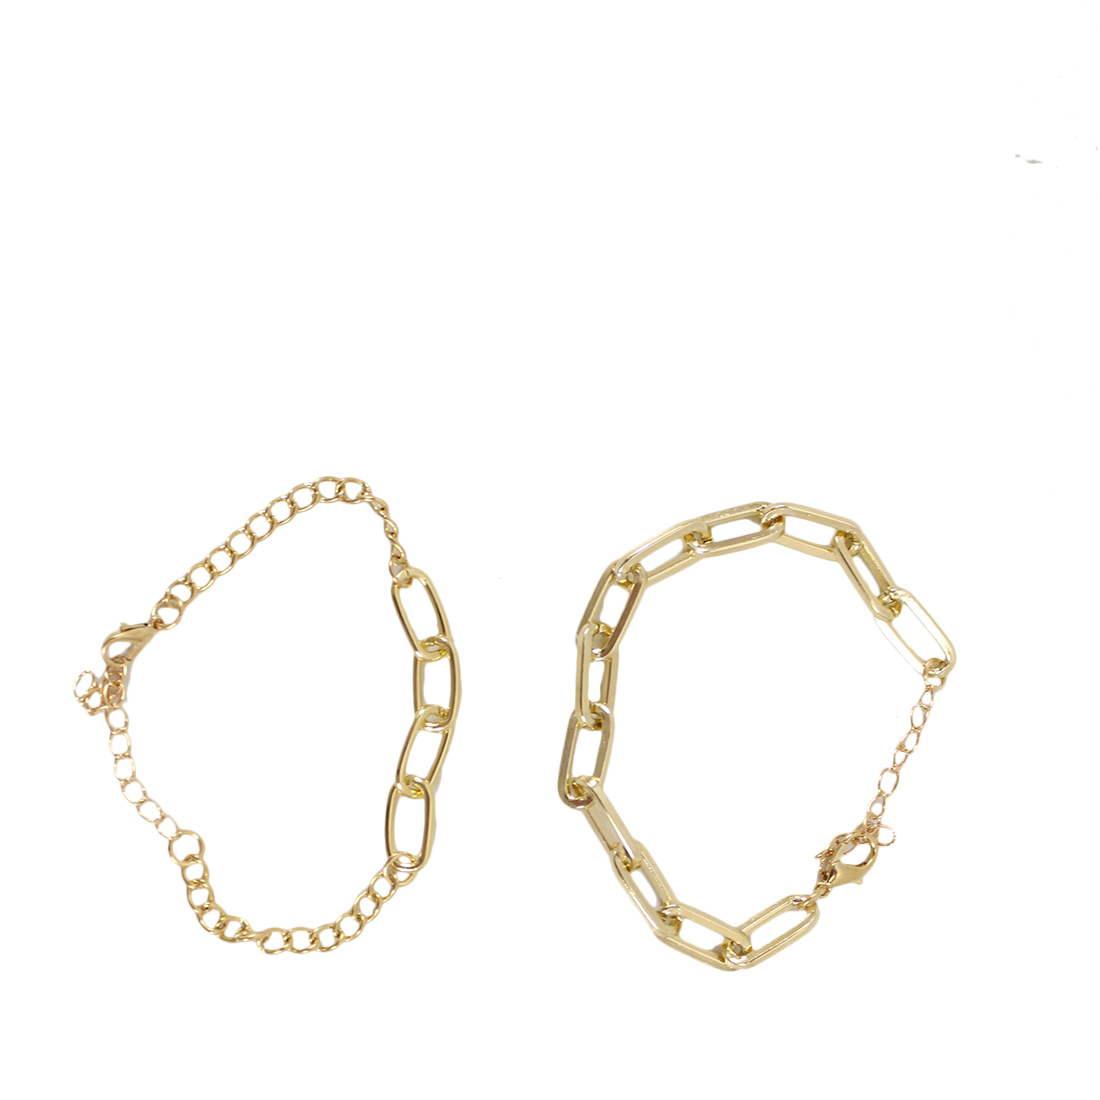 Two chain Bracelet